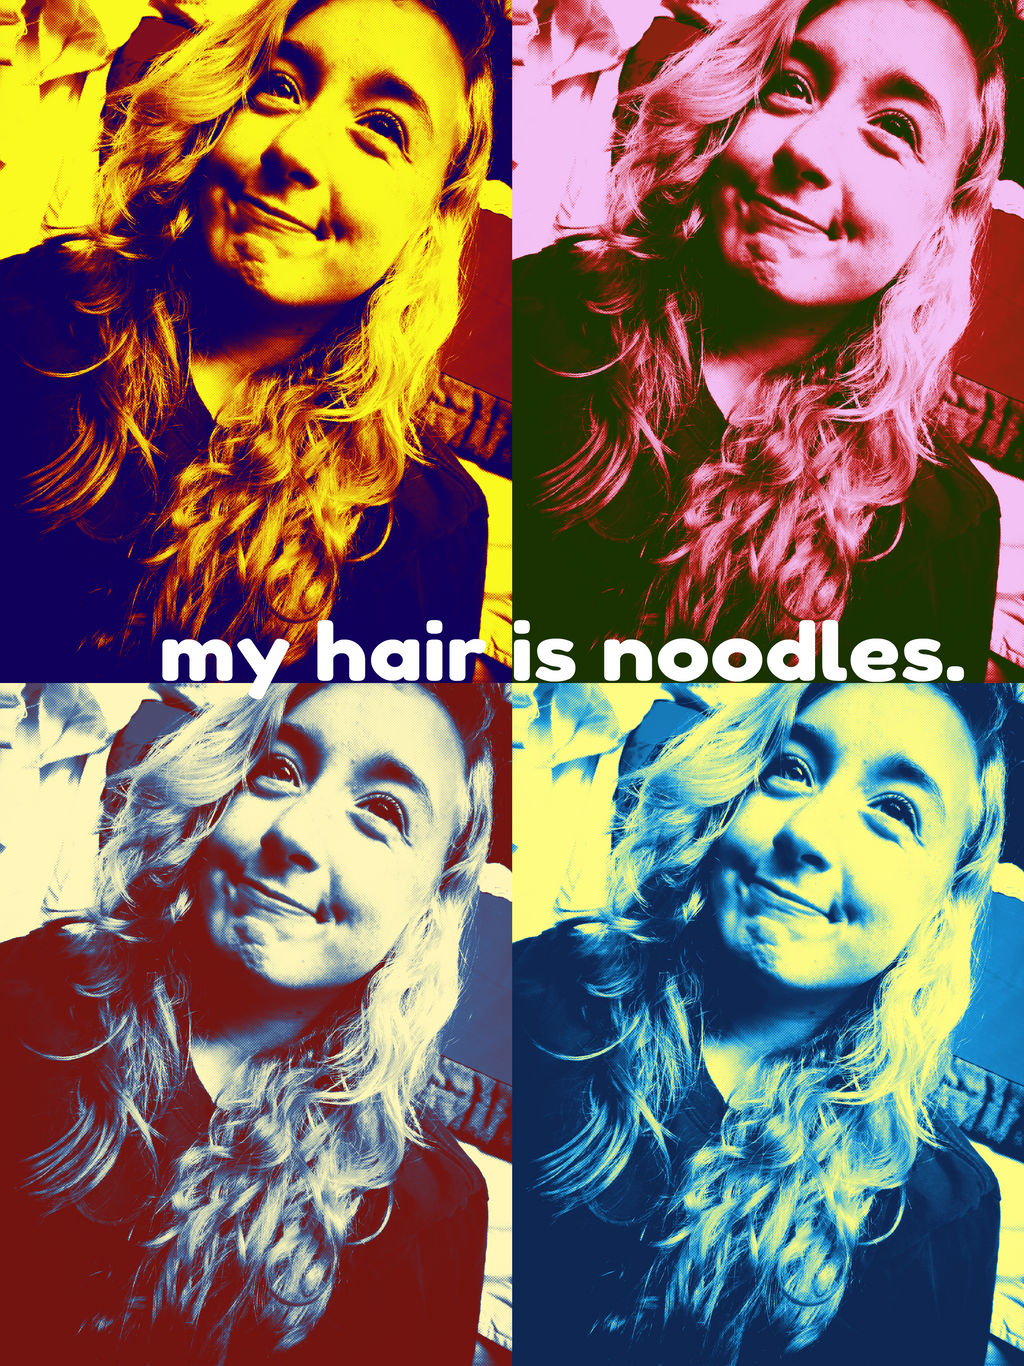 M'hair is noodles